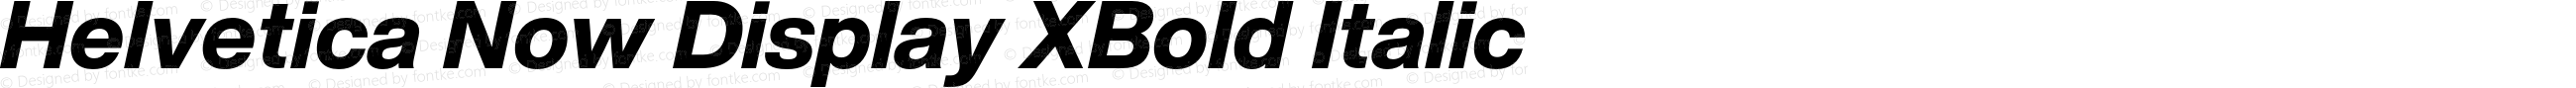 Helvetica Now Display XBd It